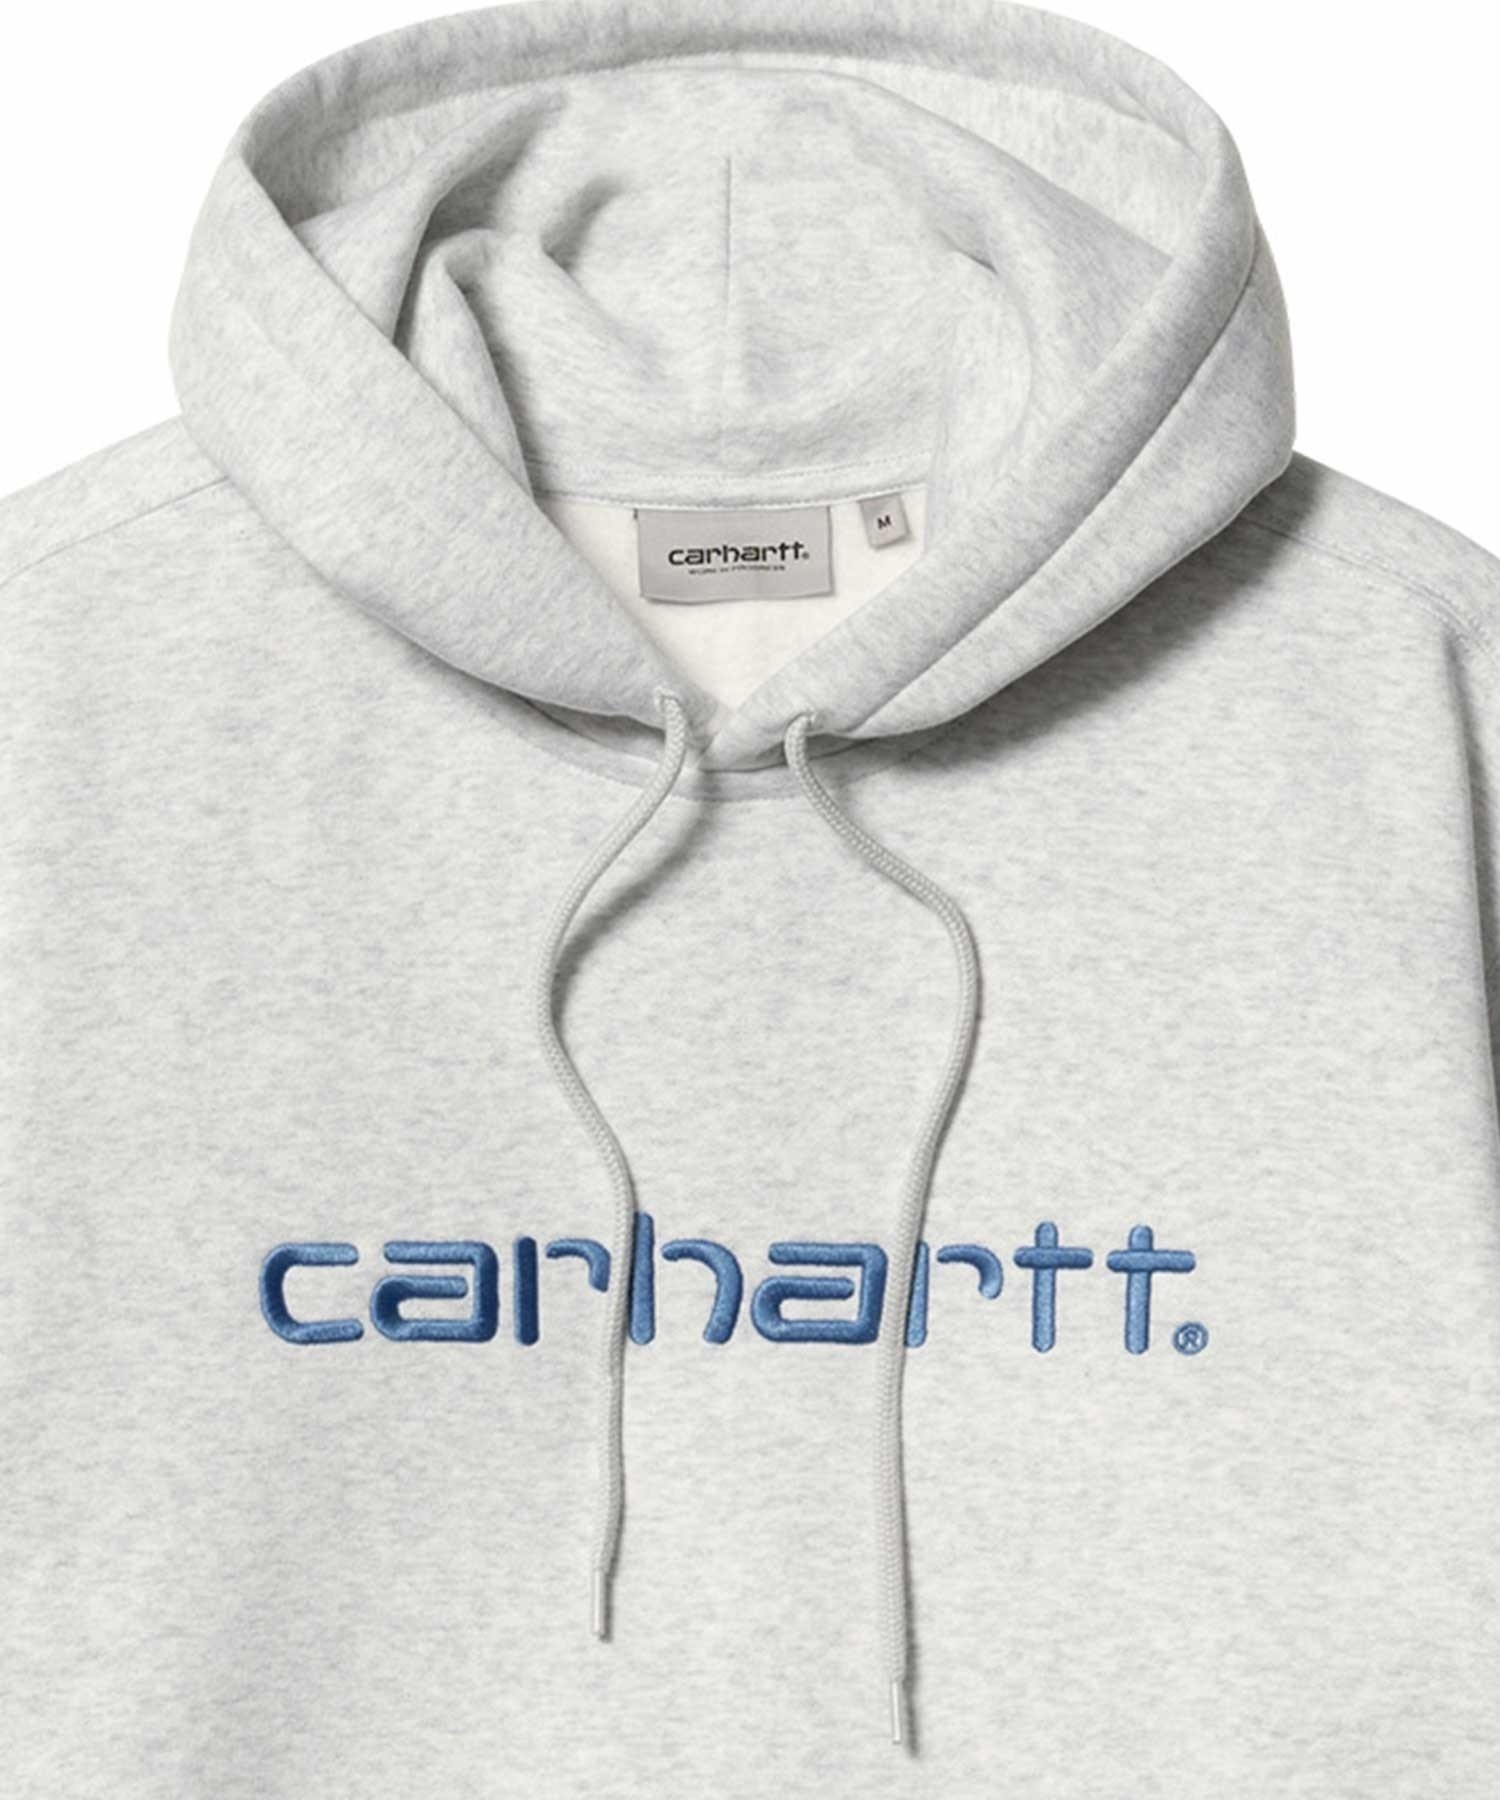 Carhartt WIP/カーハートダブリューアイピー メンズ スウェットパーカー ルーズシルエット I030547(HT/LB-S)